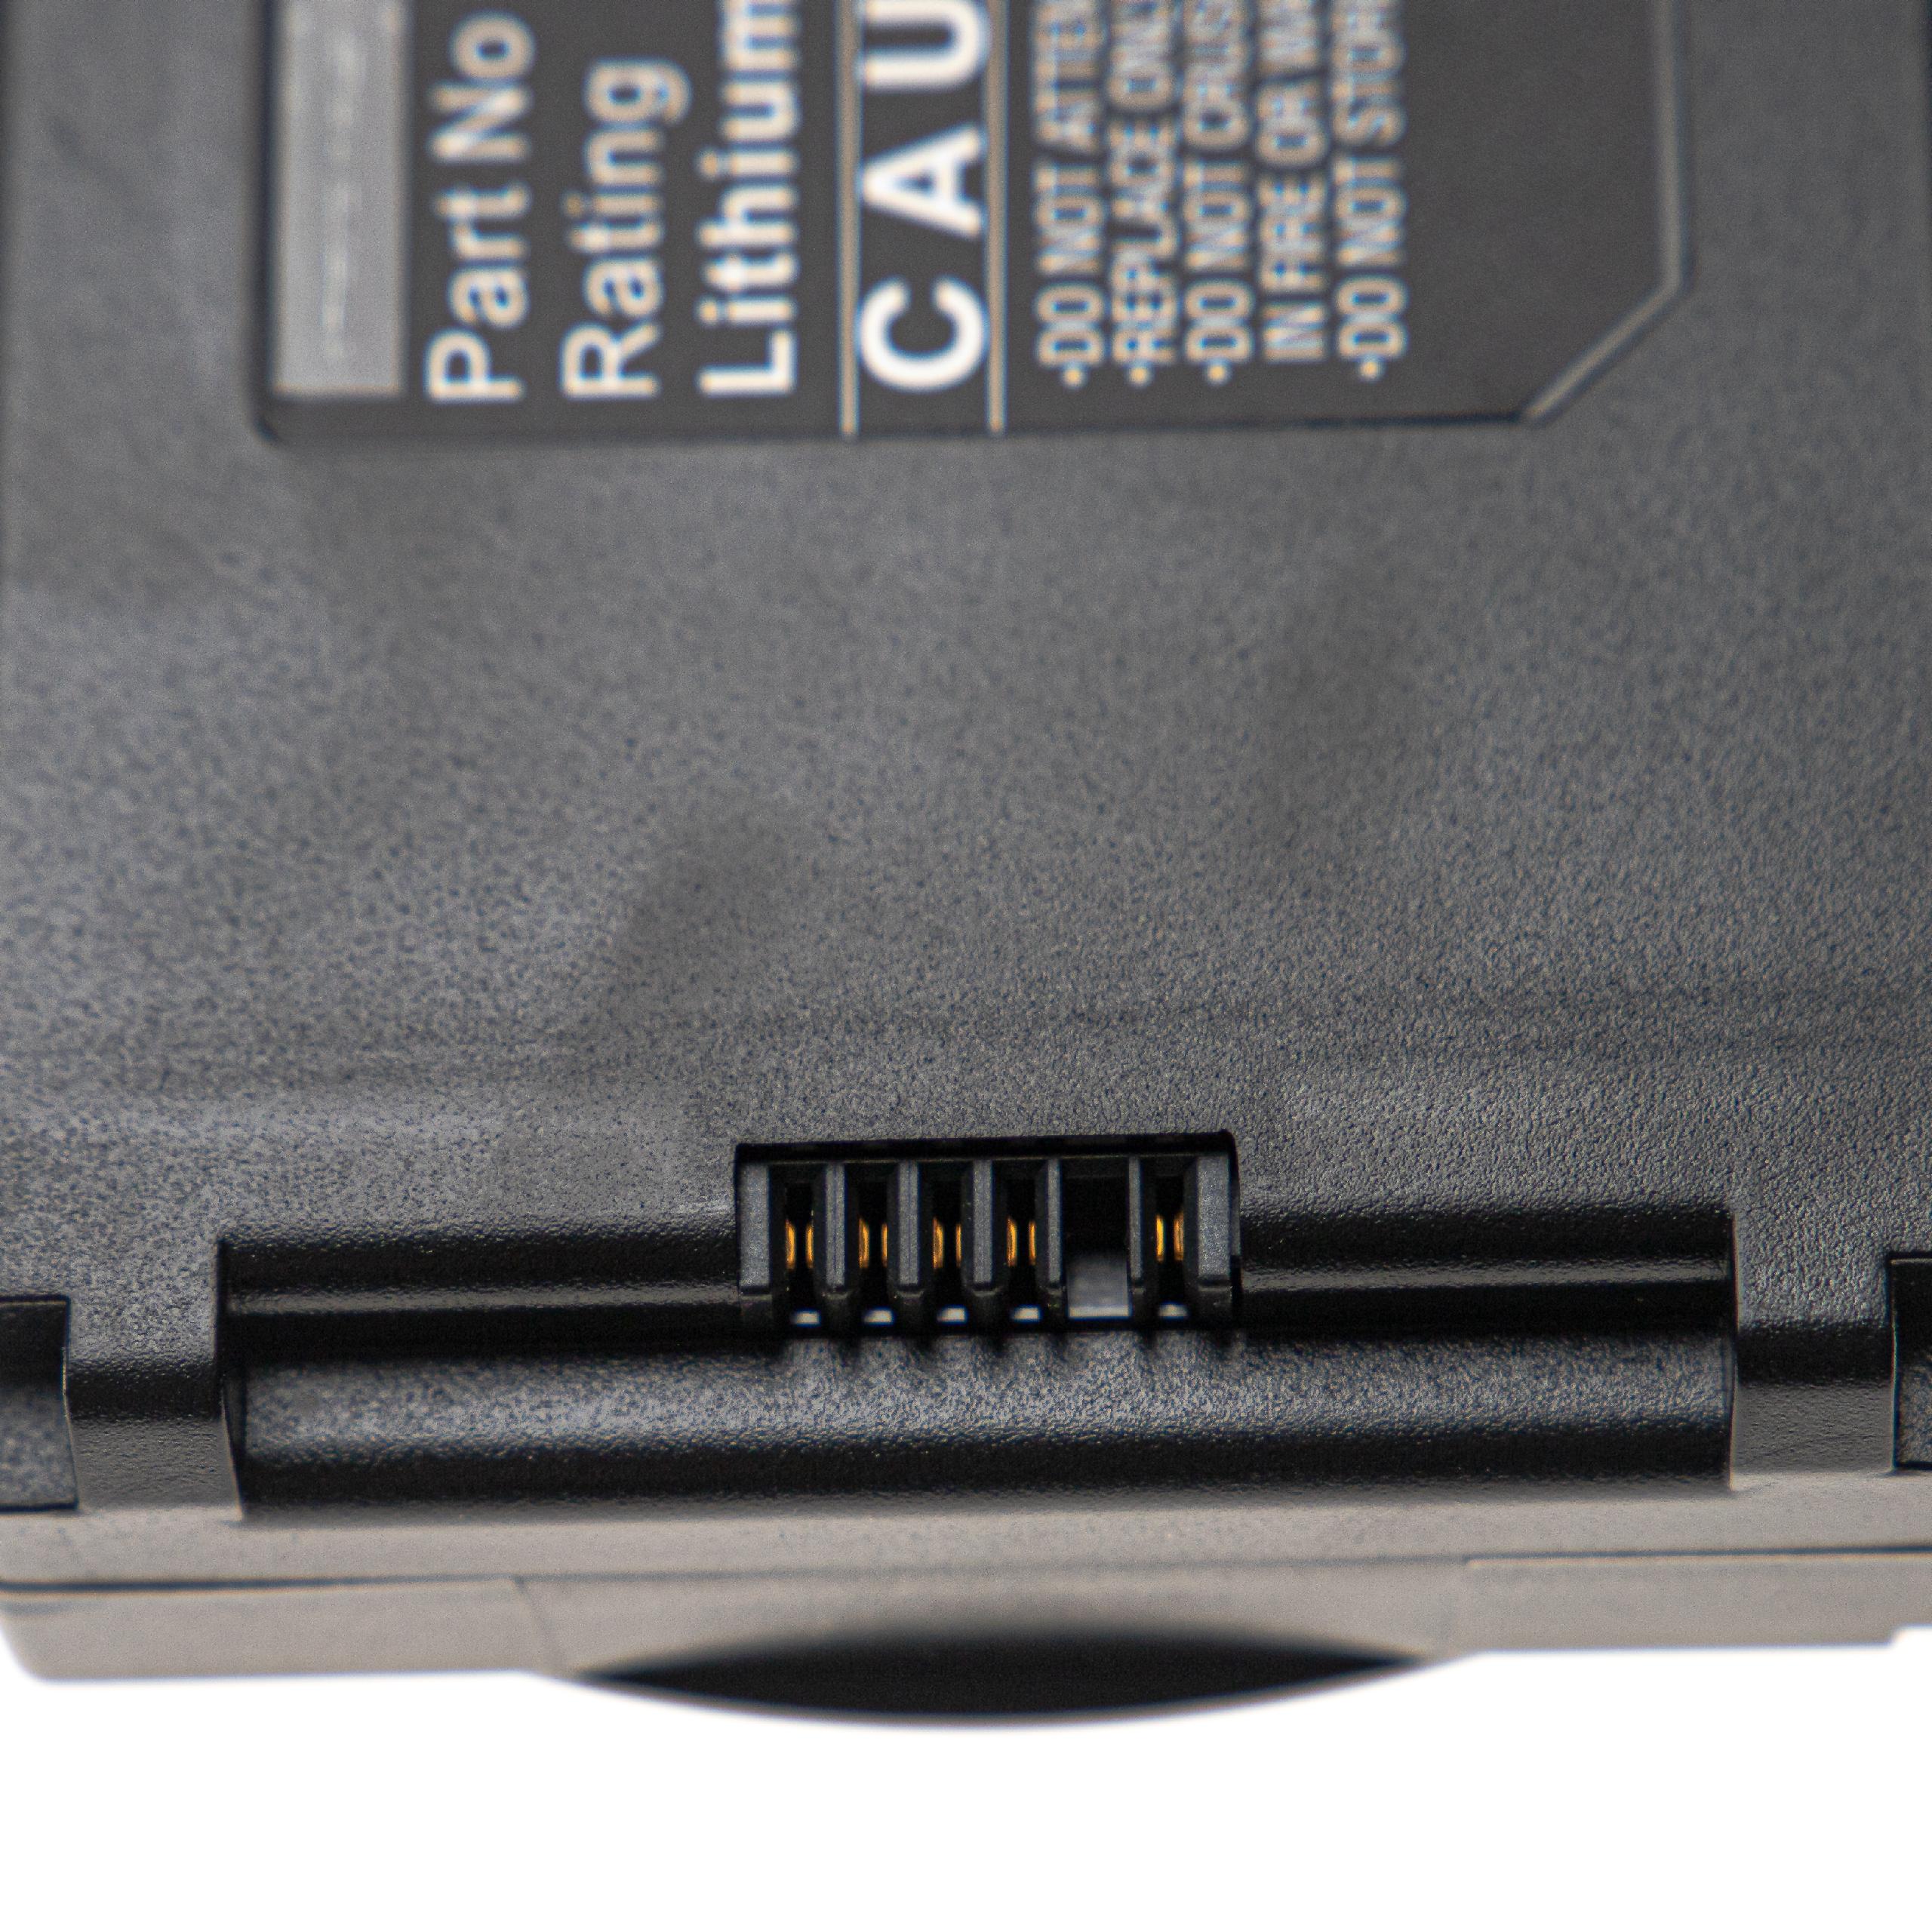 Batterie remplace Welch Allyn BATT69, BATT99 pour appareil médical - 7800mAh 11,1V Li-ion